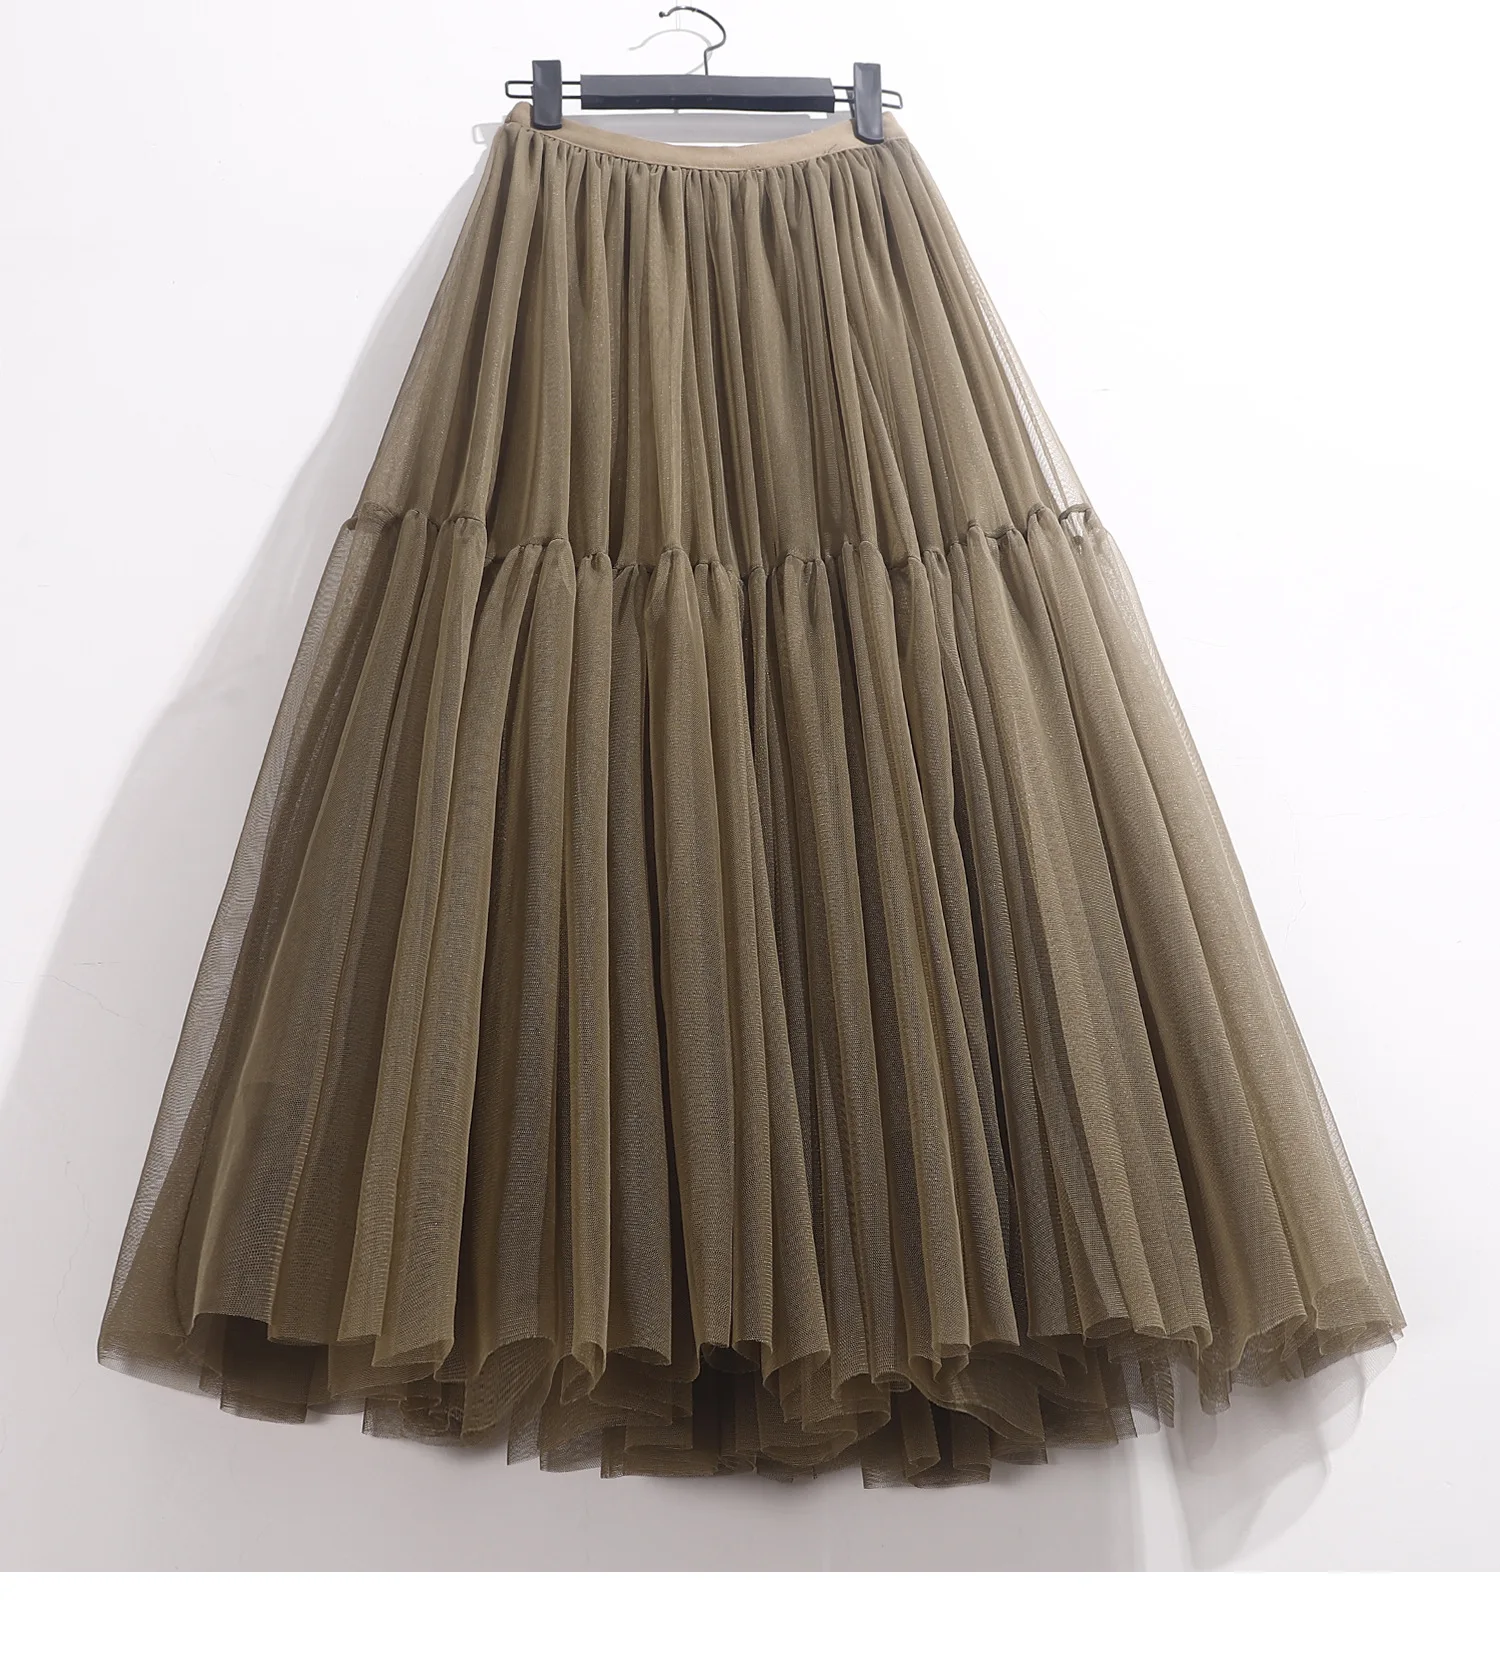 tulle skirt Ruffles Tutu Pleated Skirt Women High Waist Big Swing Vintage Tulle Skirt Korean Black Green Mesh Long Skirt Clothing Streetwear sequin skirt